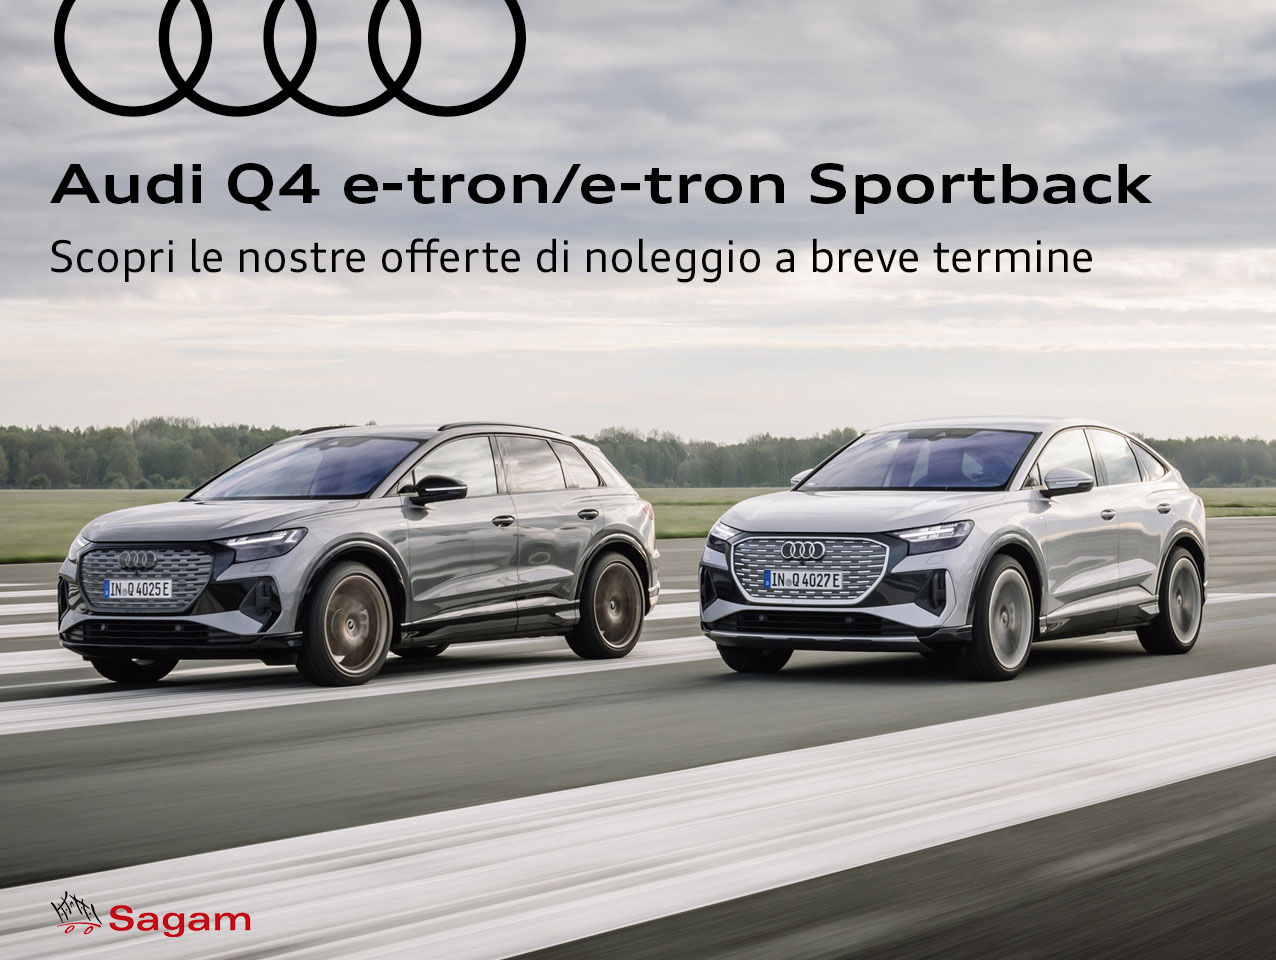 Nuova Audi Q4 e-tron/Q4 Sportback e-tron in Noleggio a breve termine